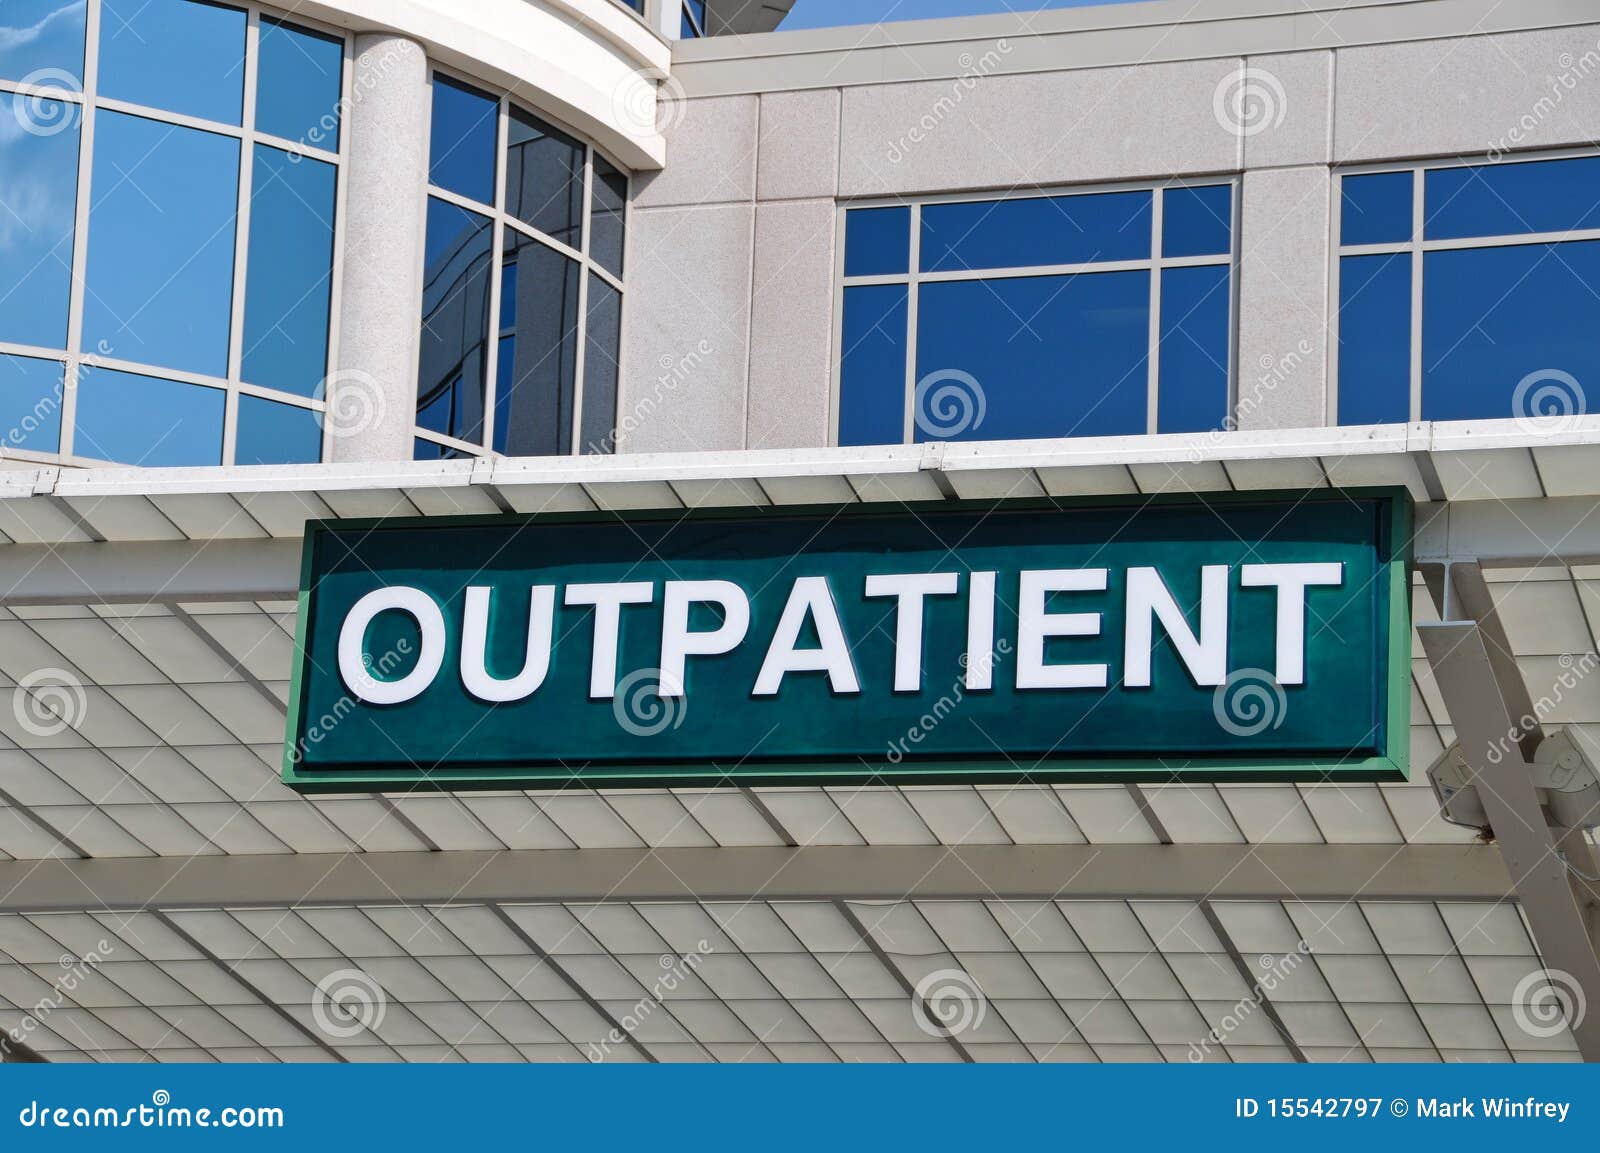 hospital outpatient entrance sign